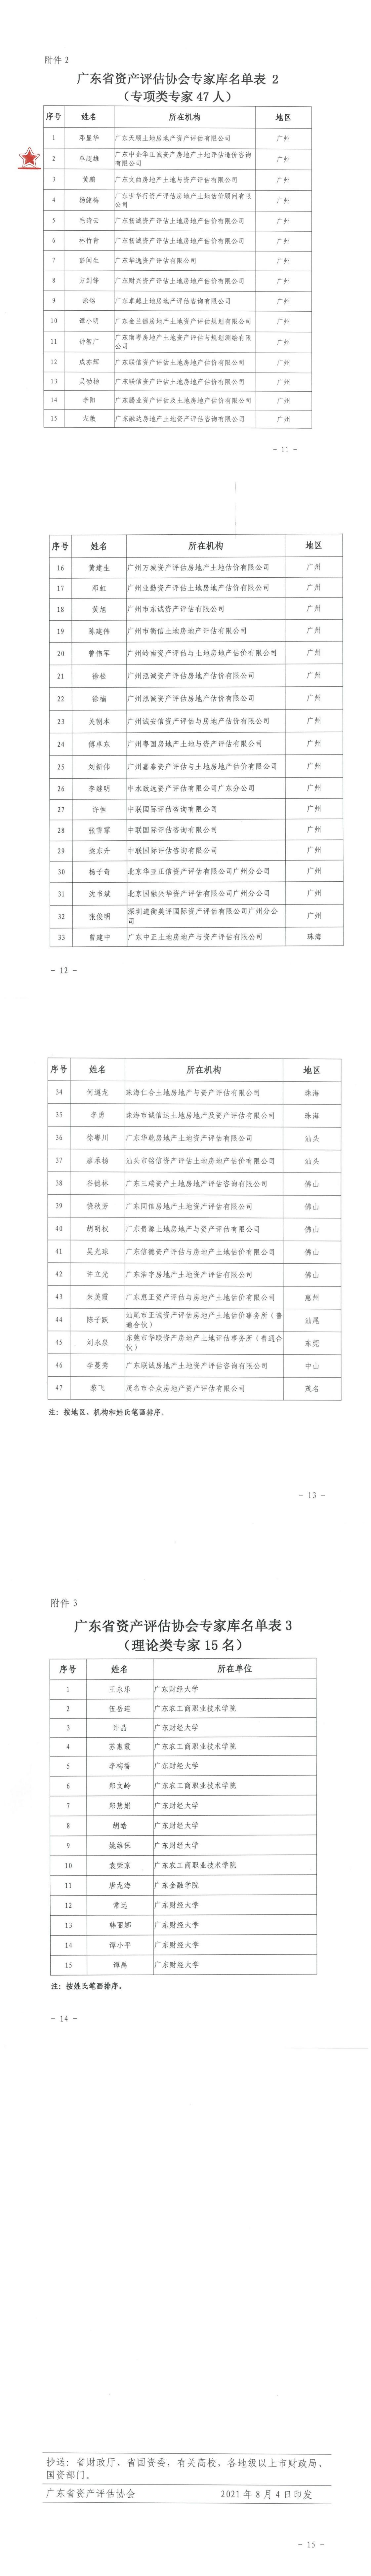 关于公布广东省资产评估协会专家库专家名单的通知(1)_00_1.jpg